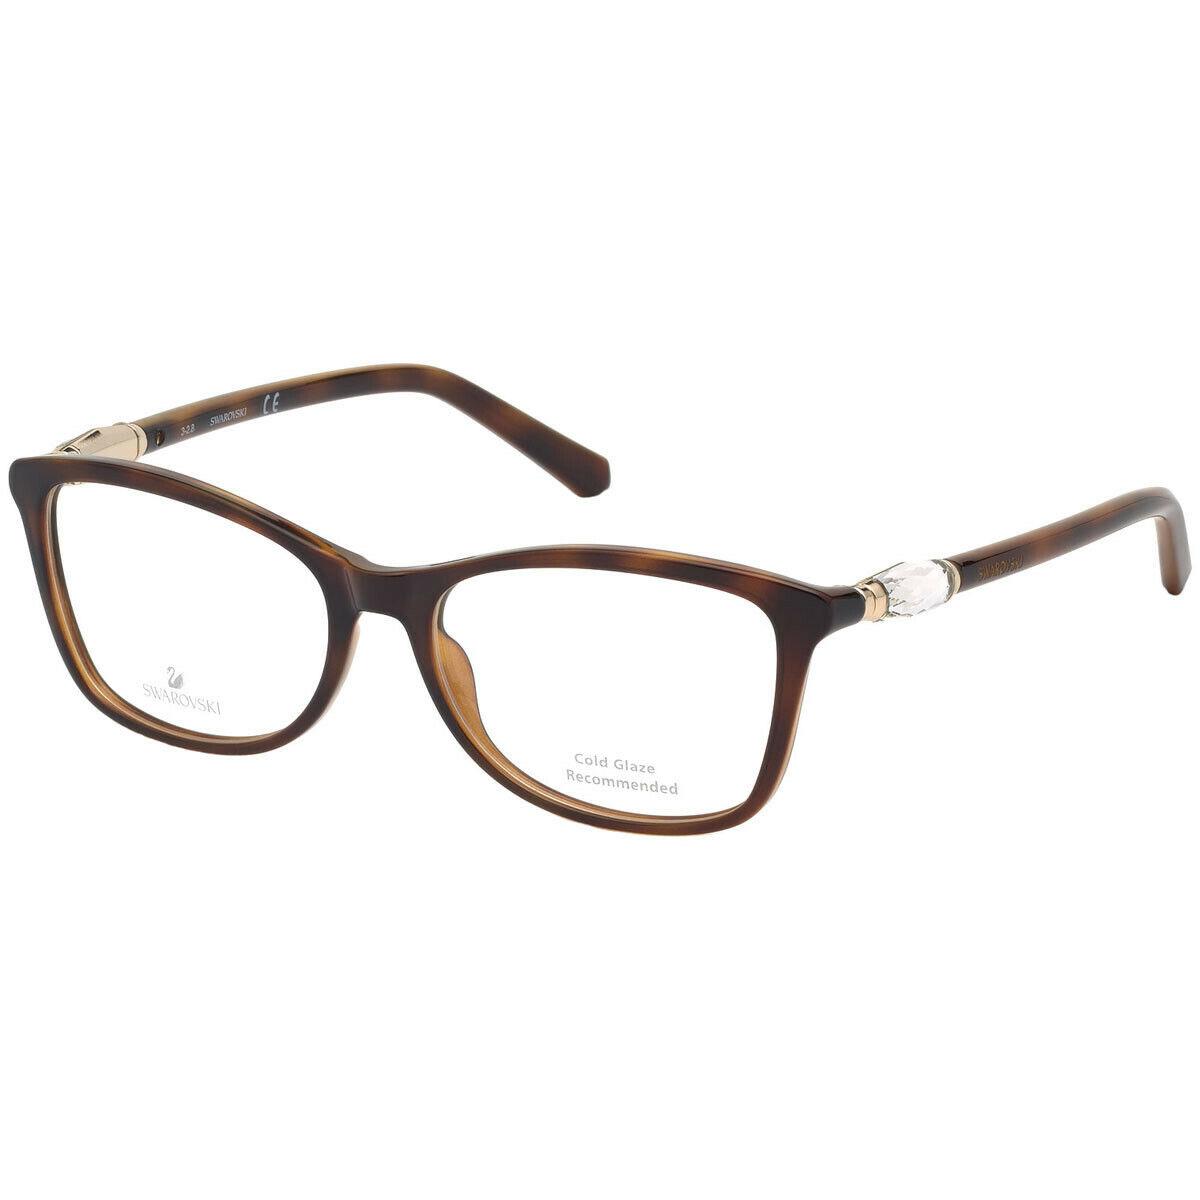 Swarovski SK5336 052 Tortoise Plastic Eyeglasses 53-16-140 SW5336 Cold Glaze